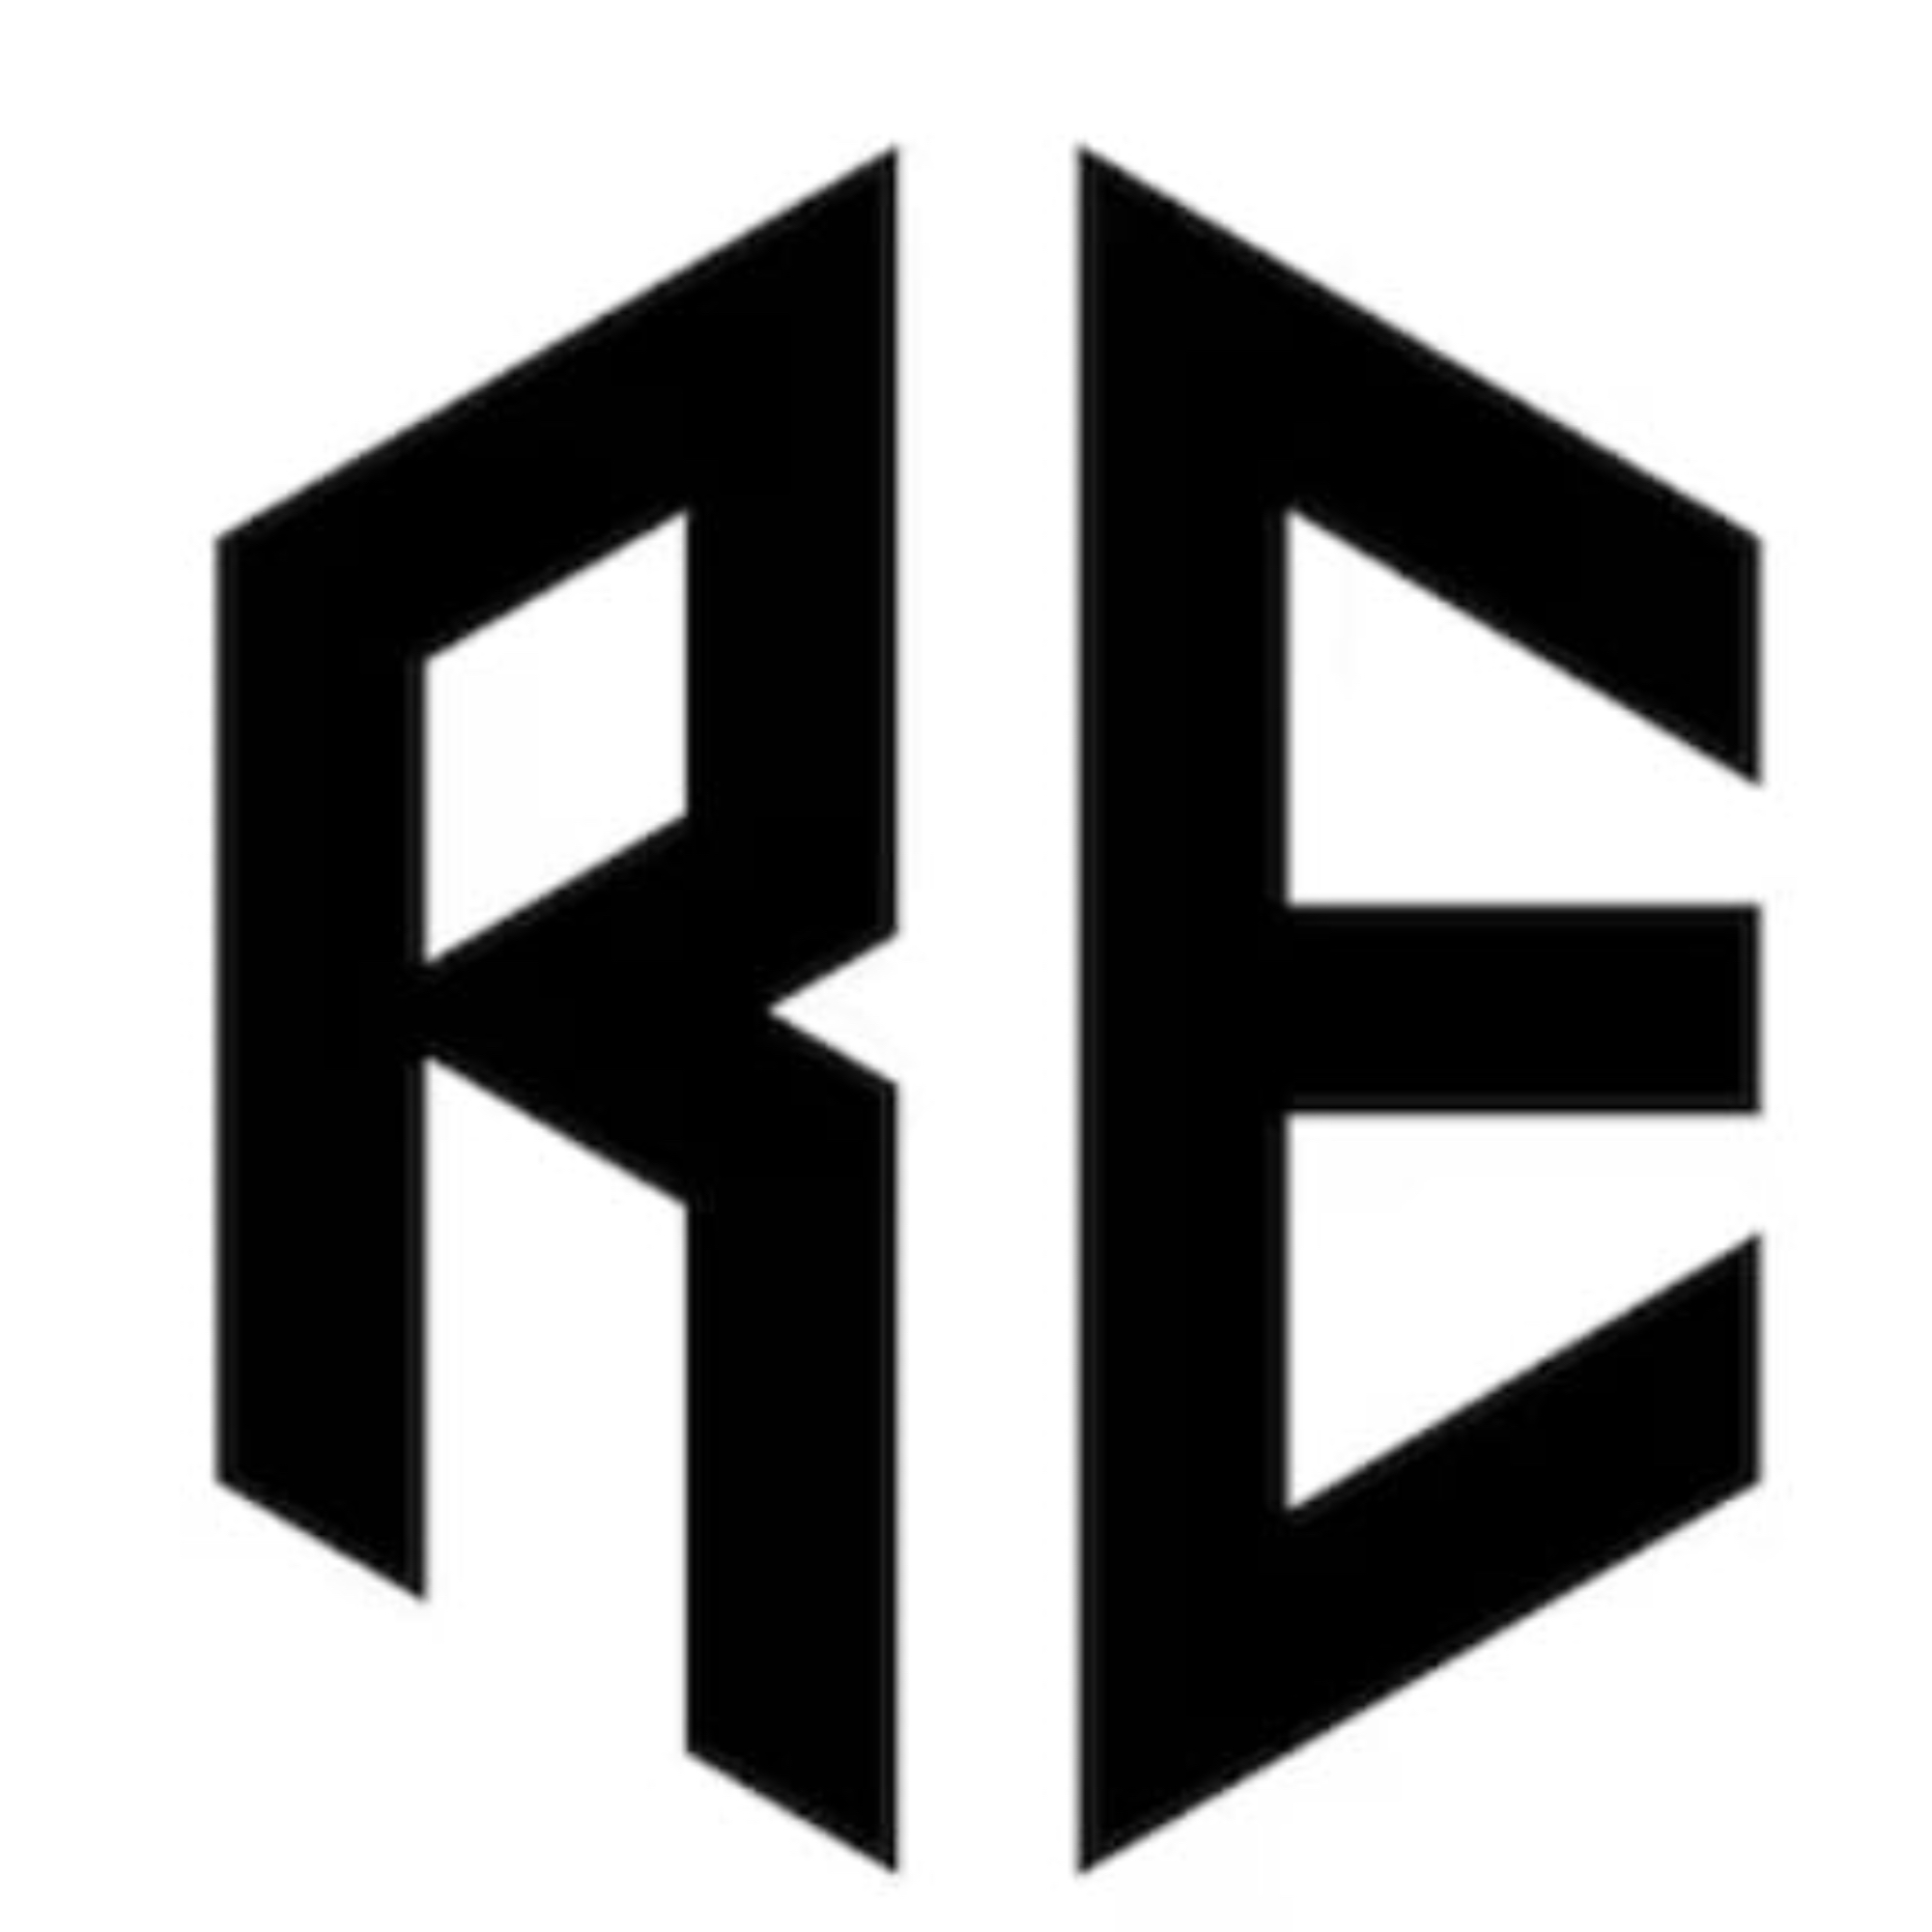 The official logo of Ryder Elite